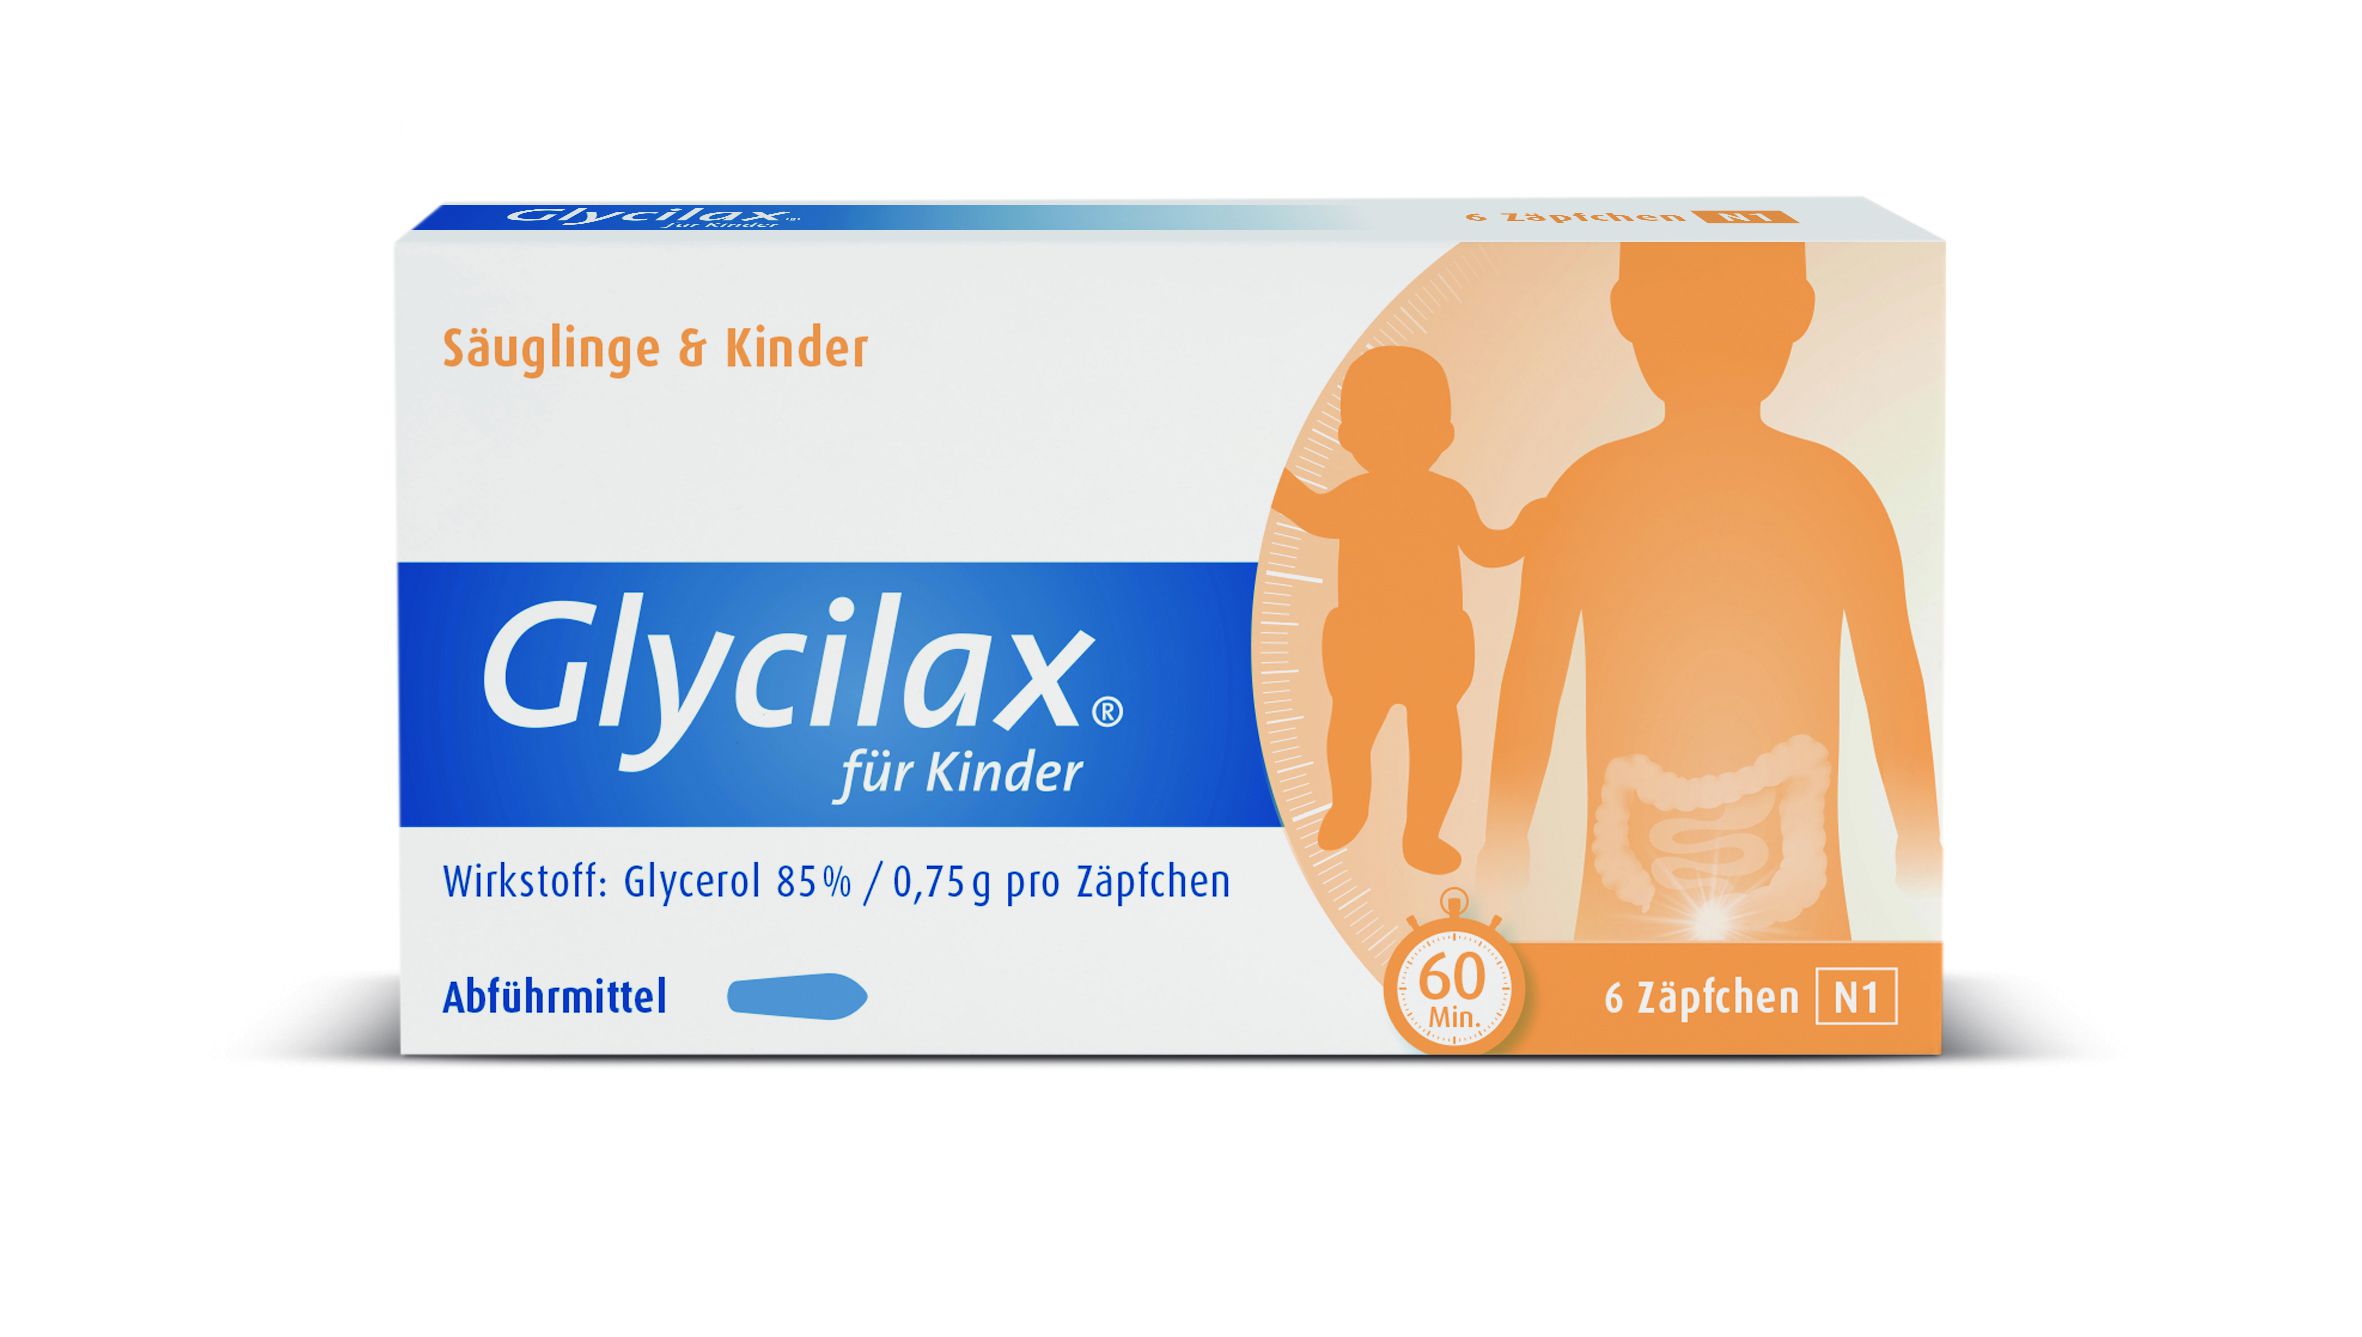 GLYCILAX Zäpfchen für Kinder